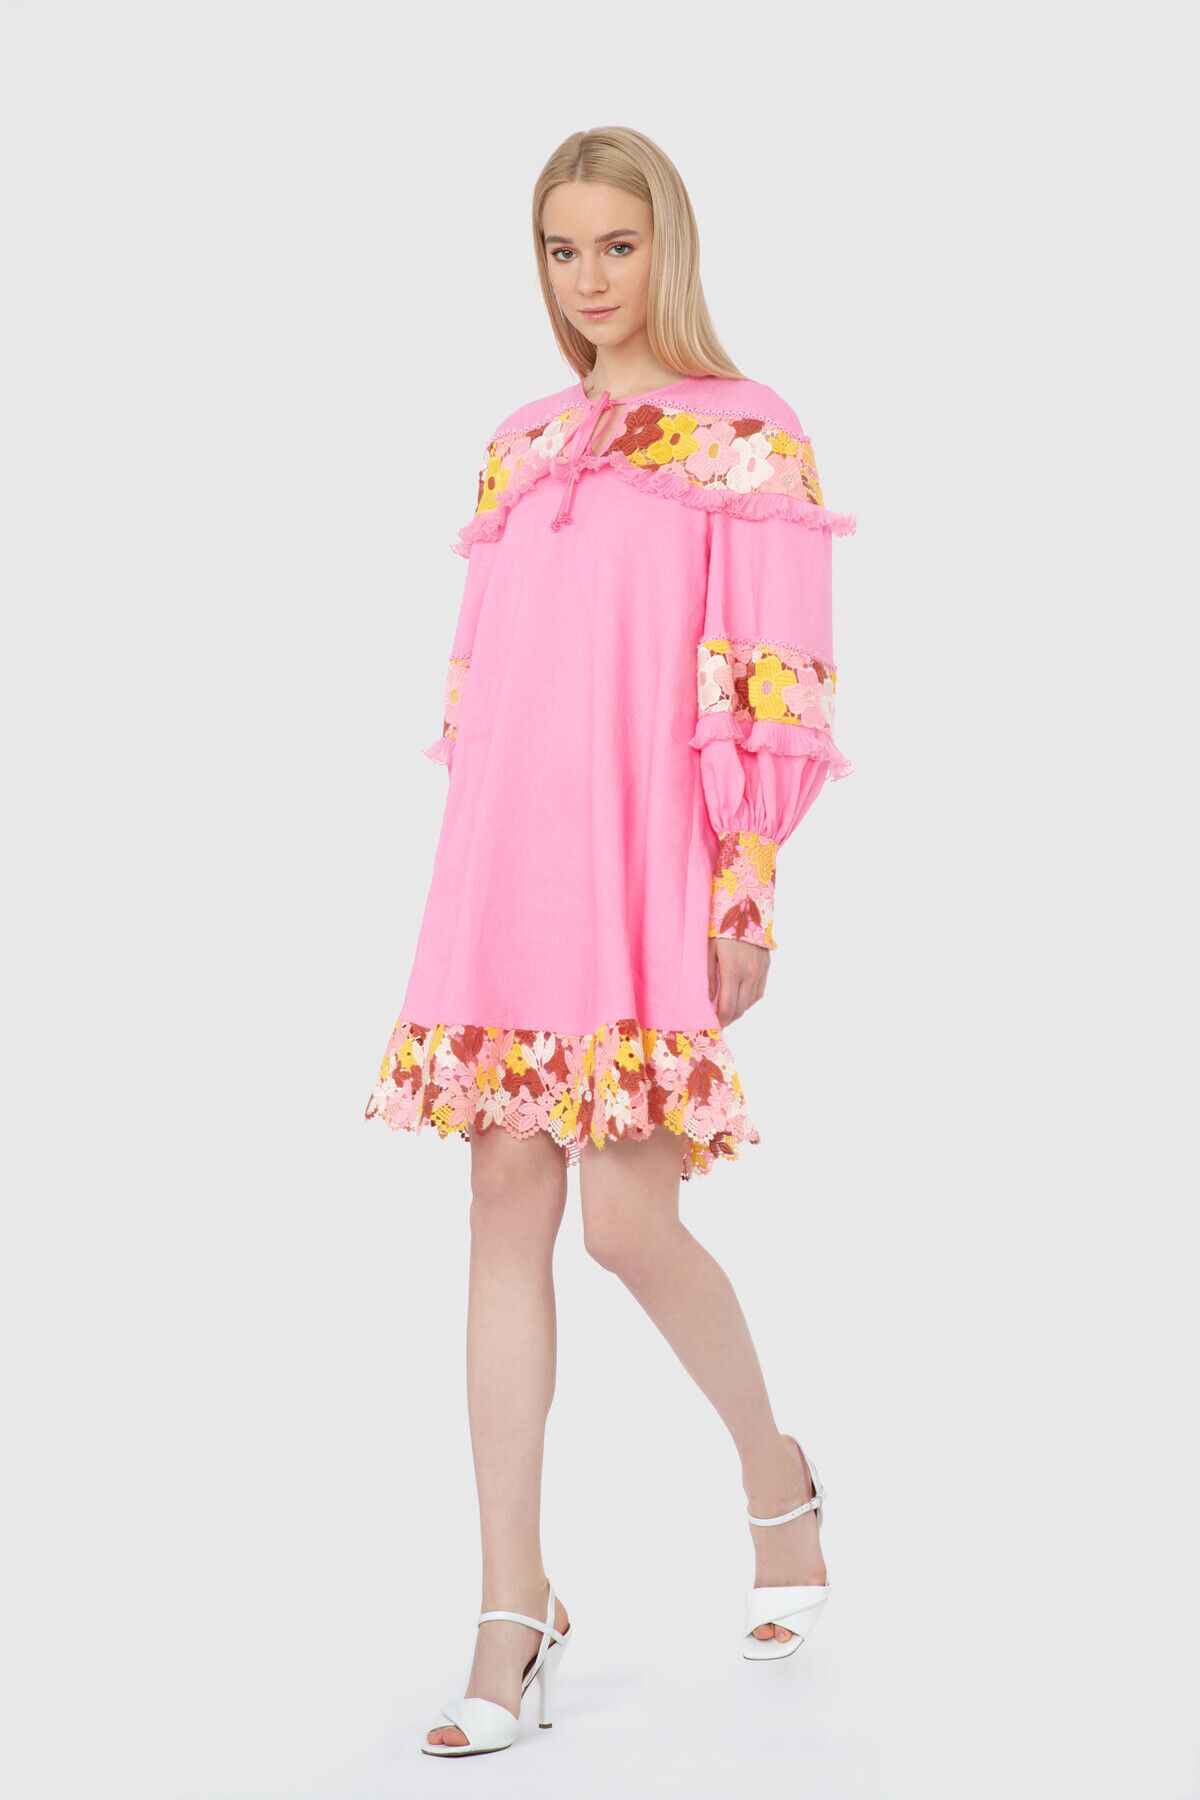 GIZIA - Floral Patterned Pink Dress